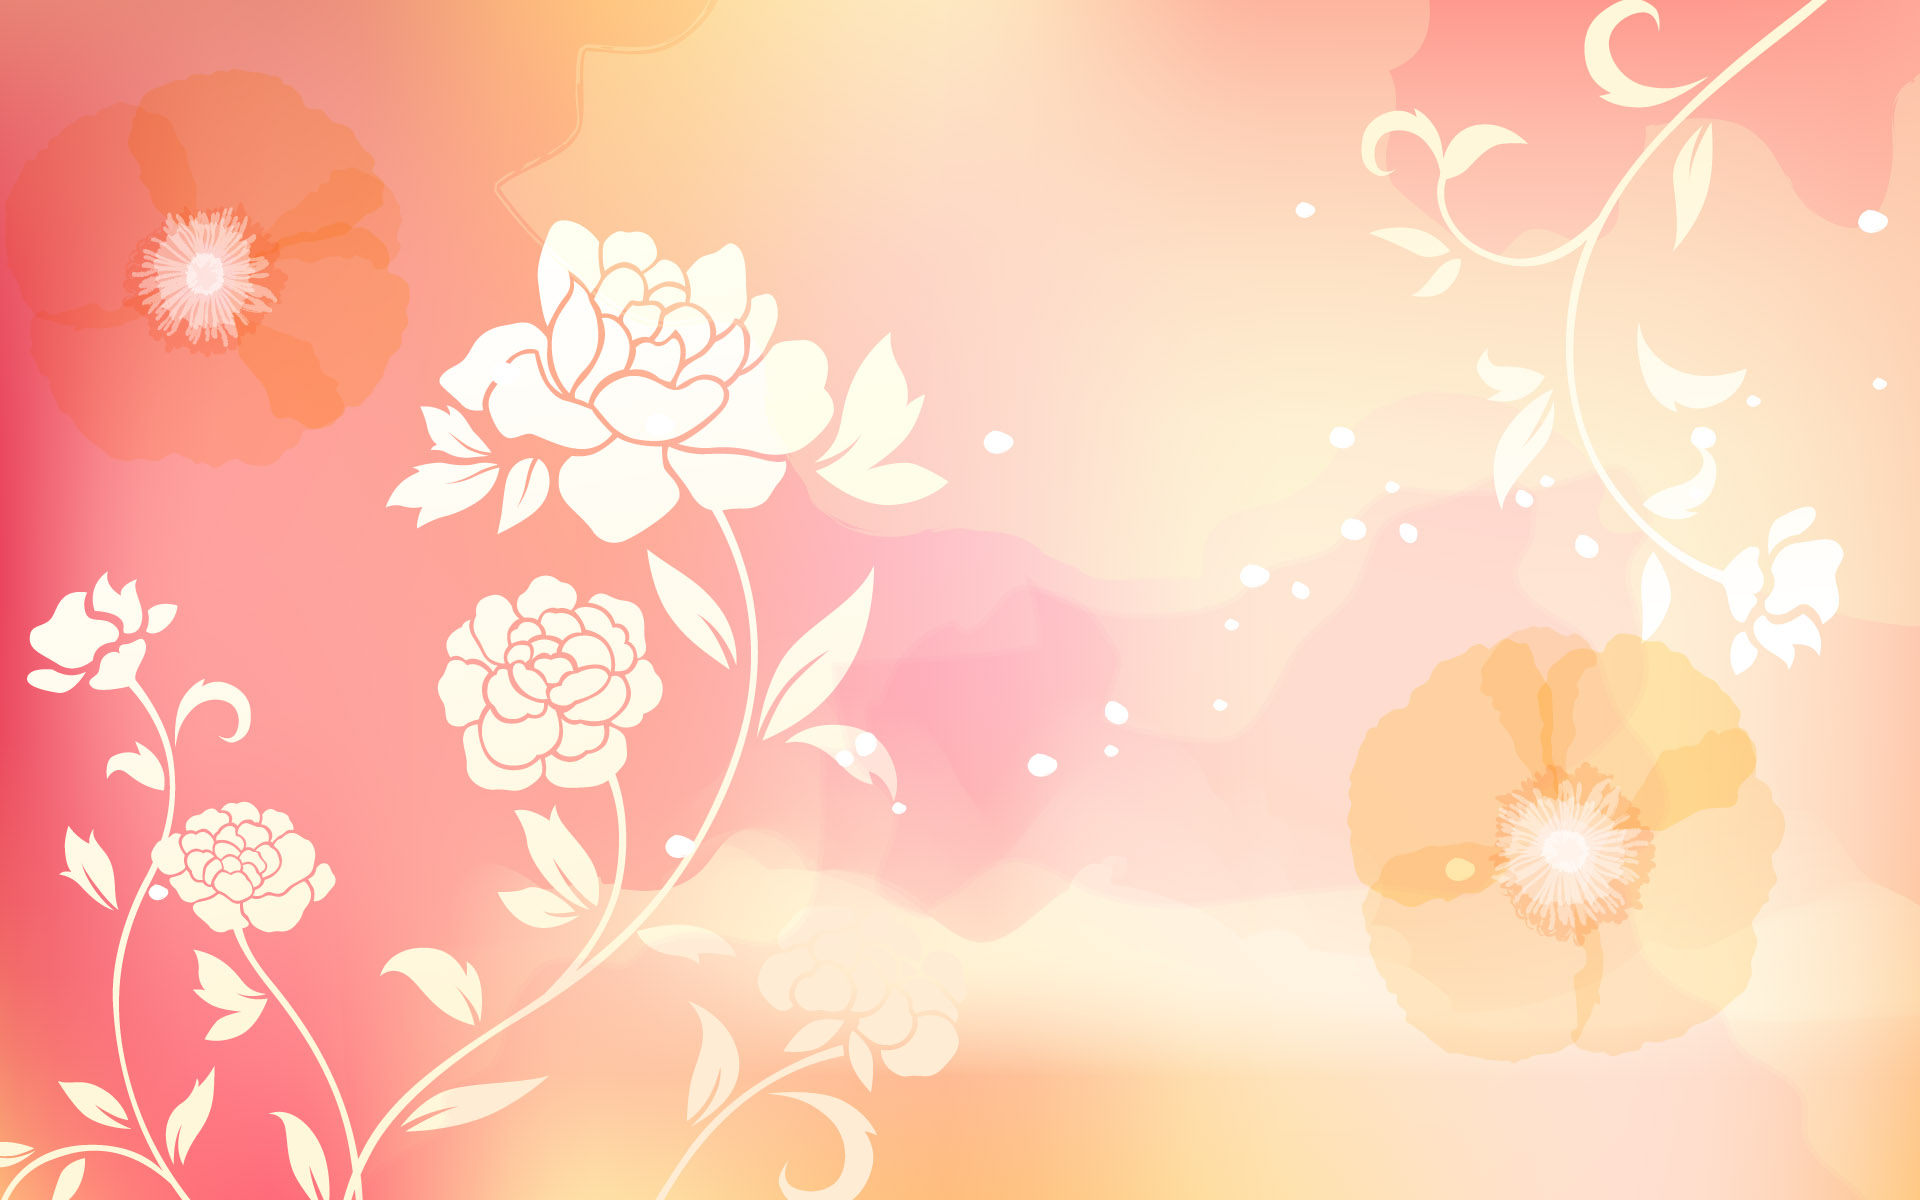 11920x1080p Flower Full Hd Wallpapers - Flower Background Light Orange , HD Wallpaper & Backgrounds